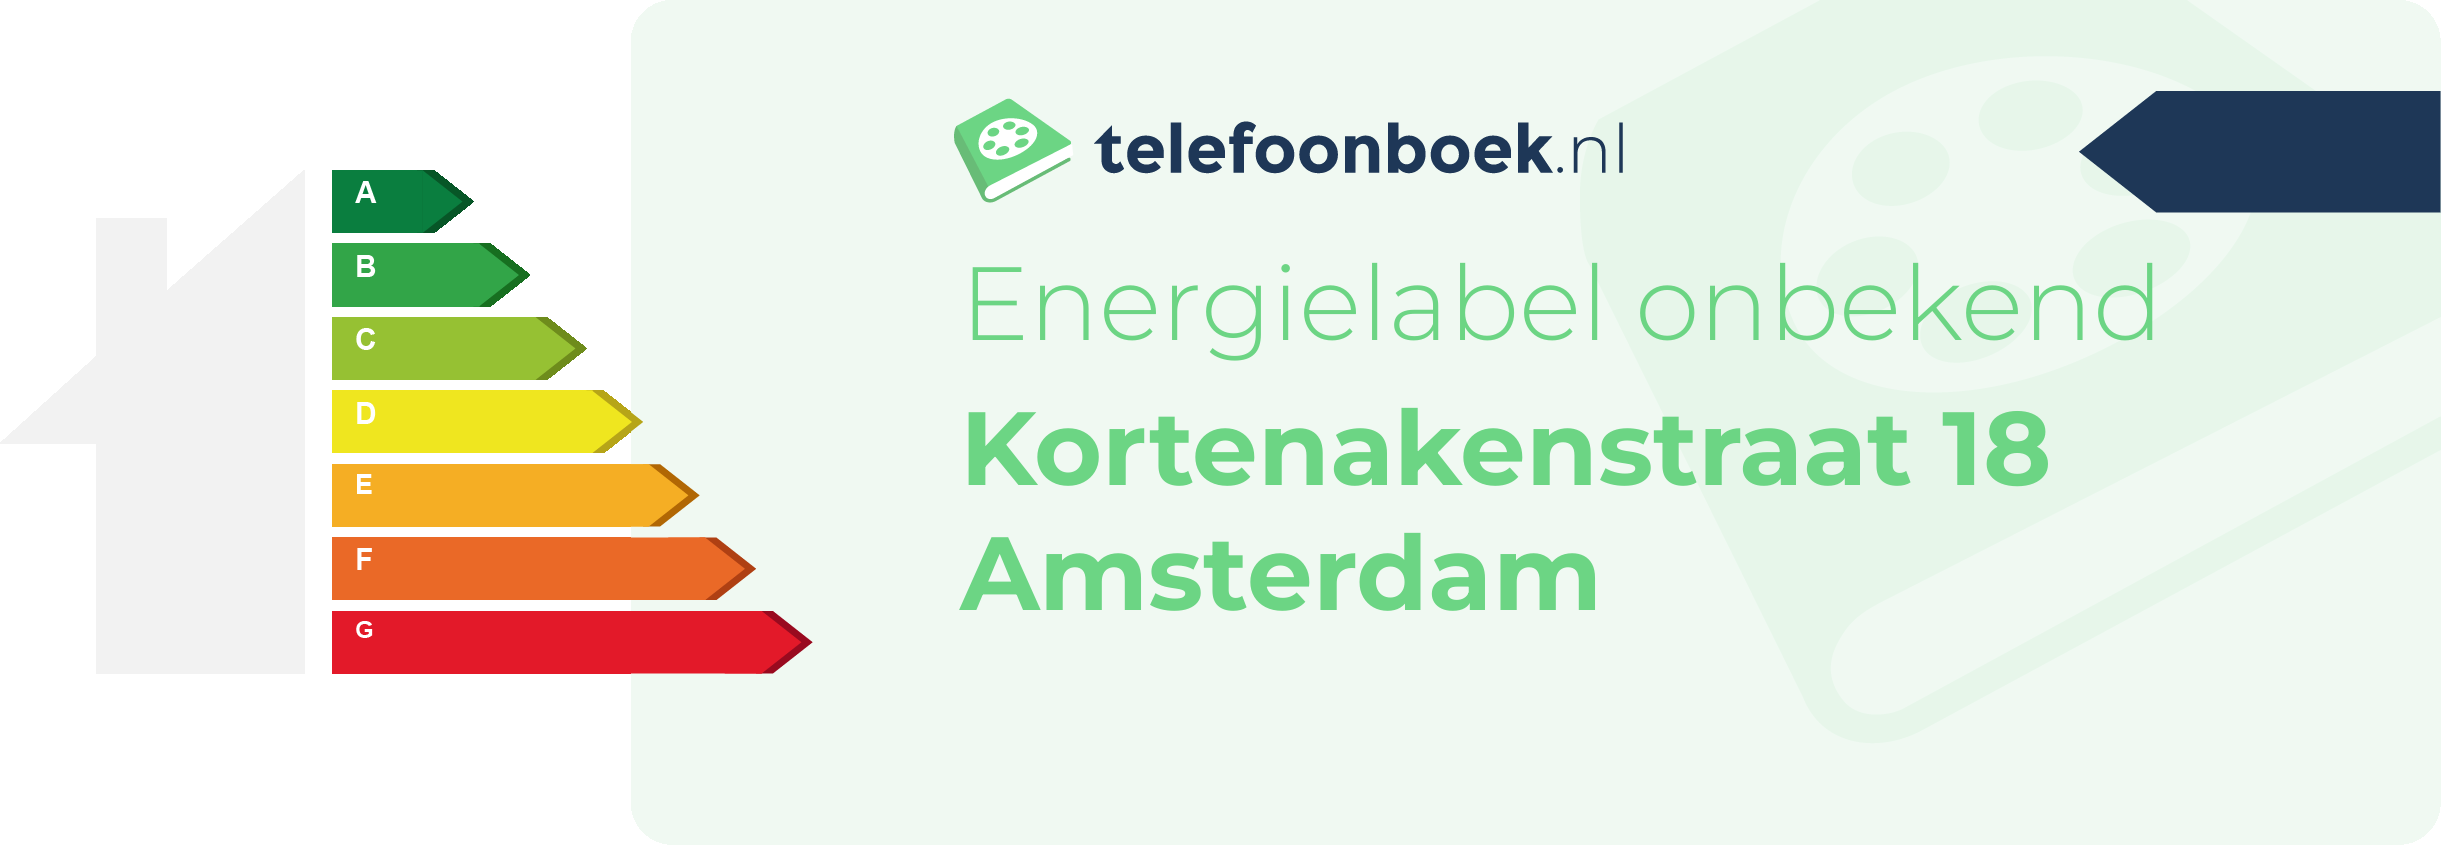 Energielabel Kortenakenstraat 18 Amsterdam